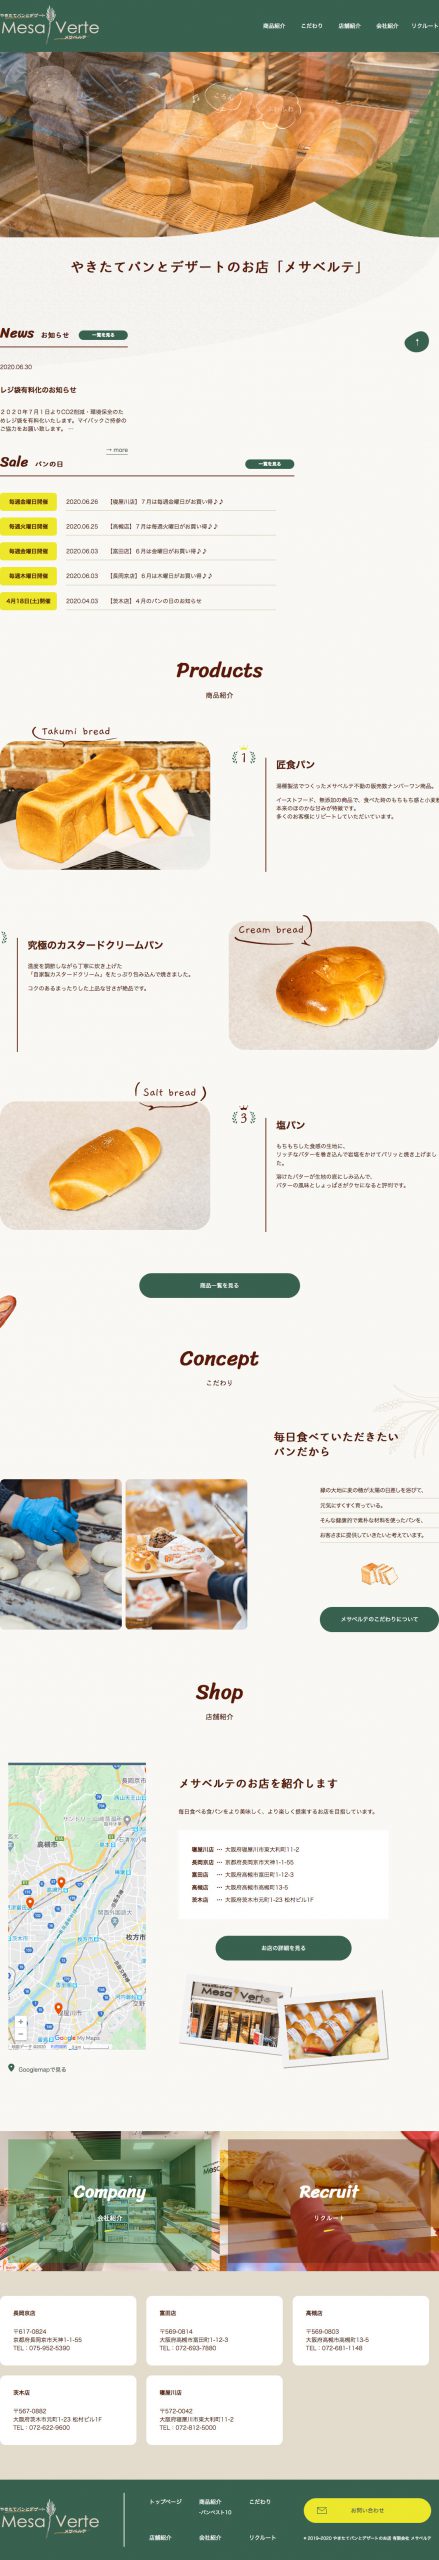 食品・飲料 ホームページ制作 WEBデザイン参考ギャラリー 焼きたてパンとデザートメサベルテ